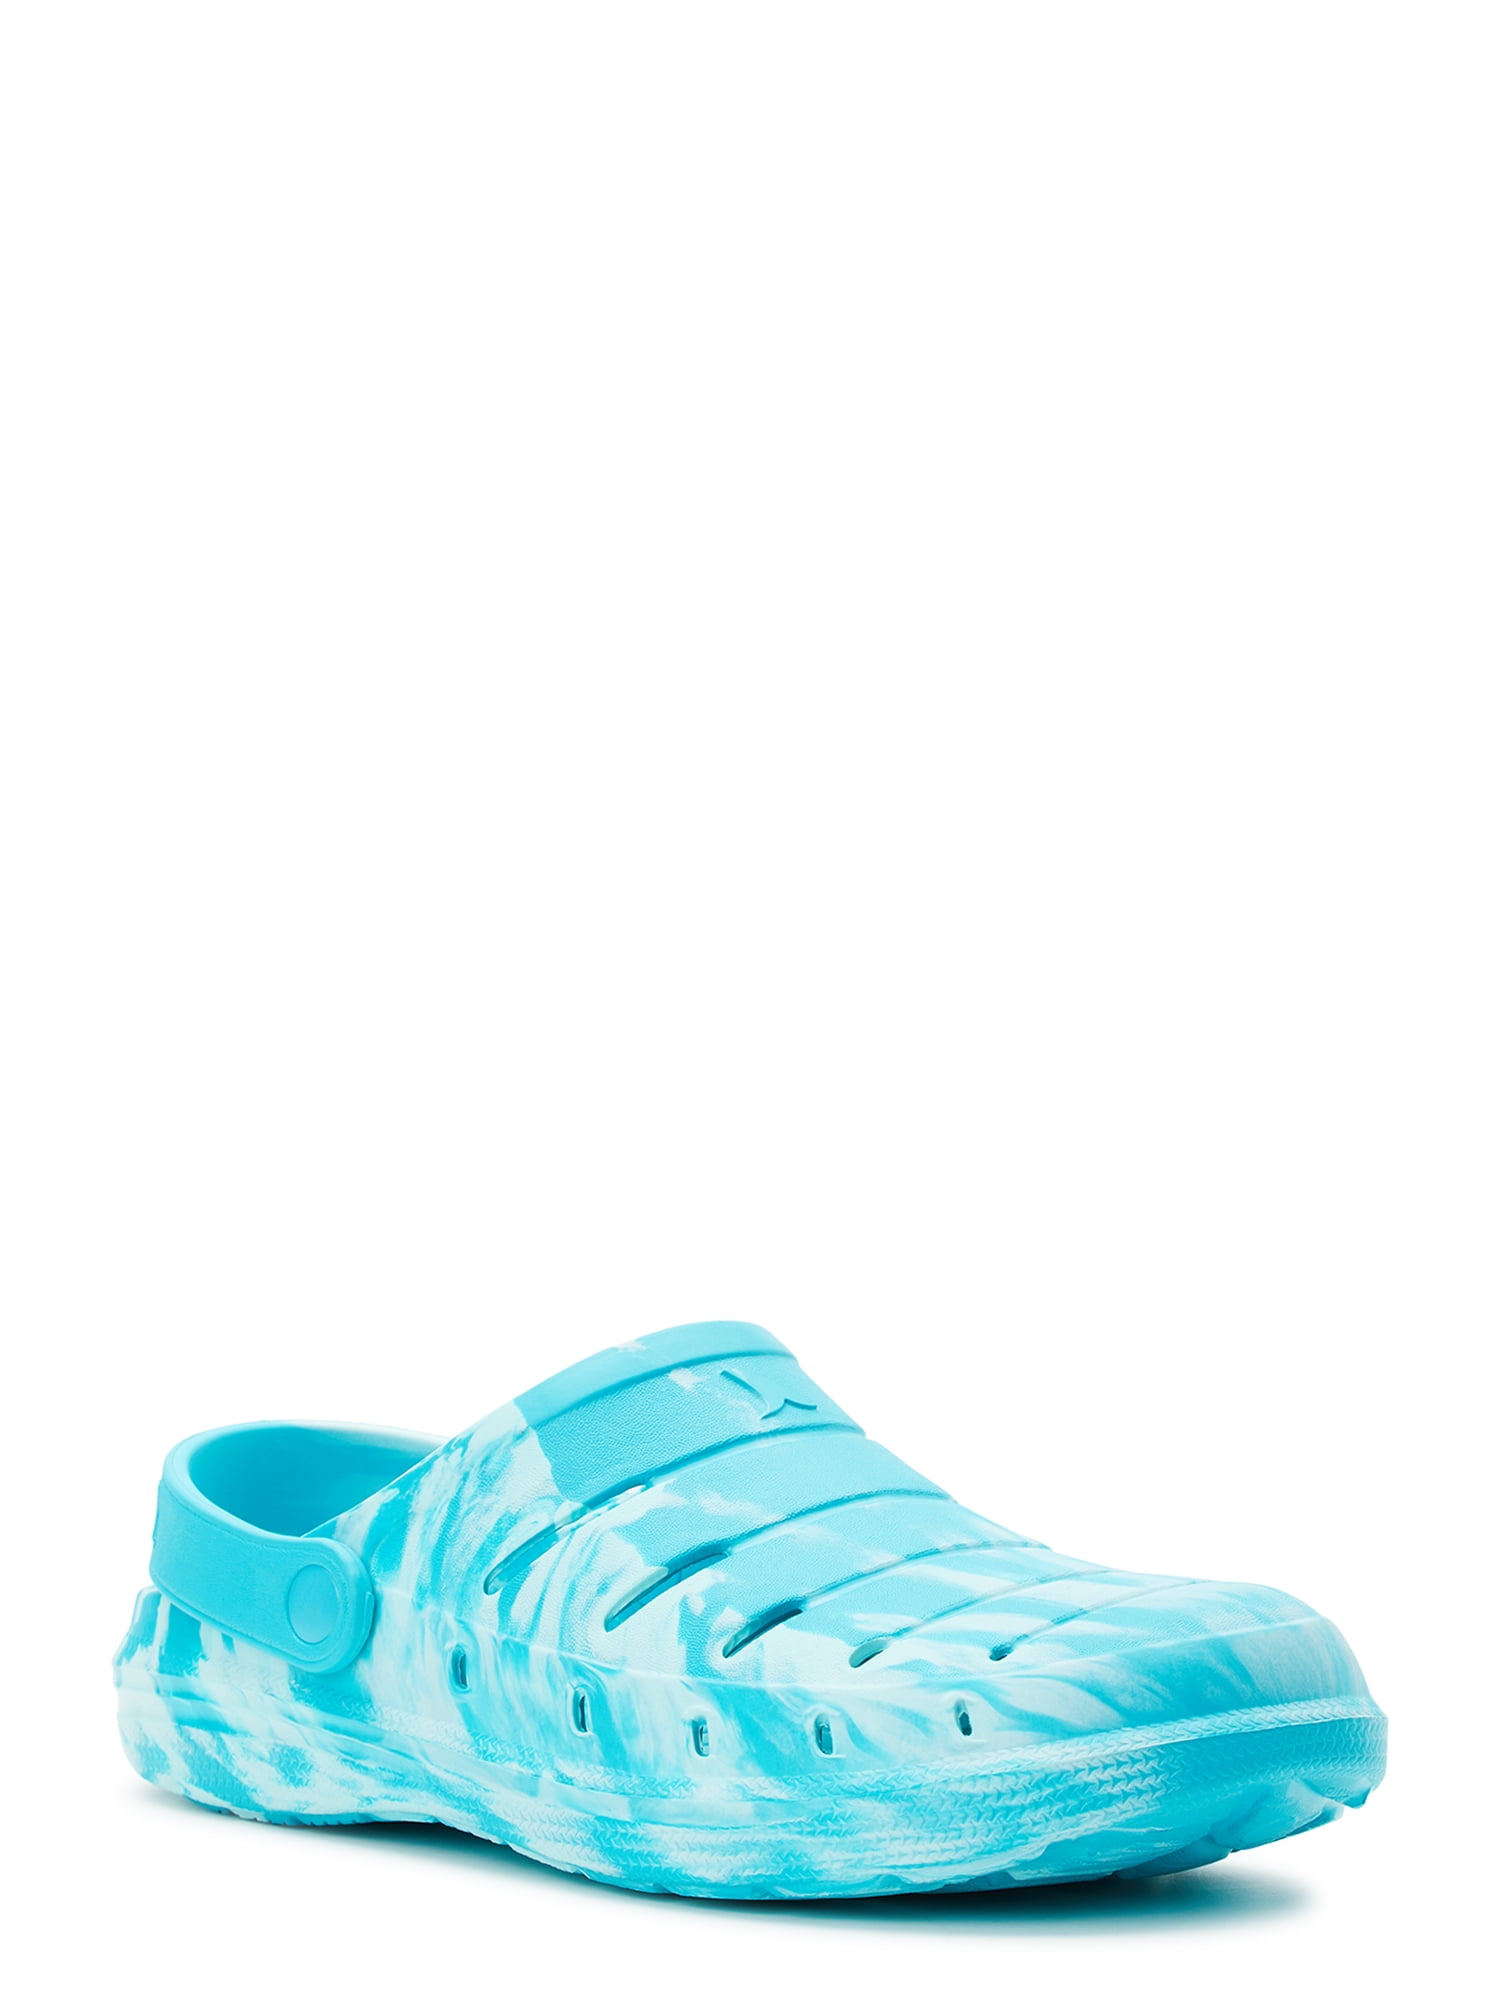 LV Shark Clog - Shoes